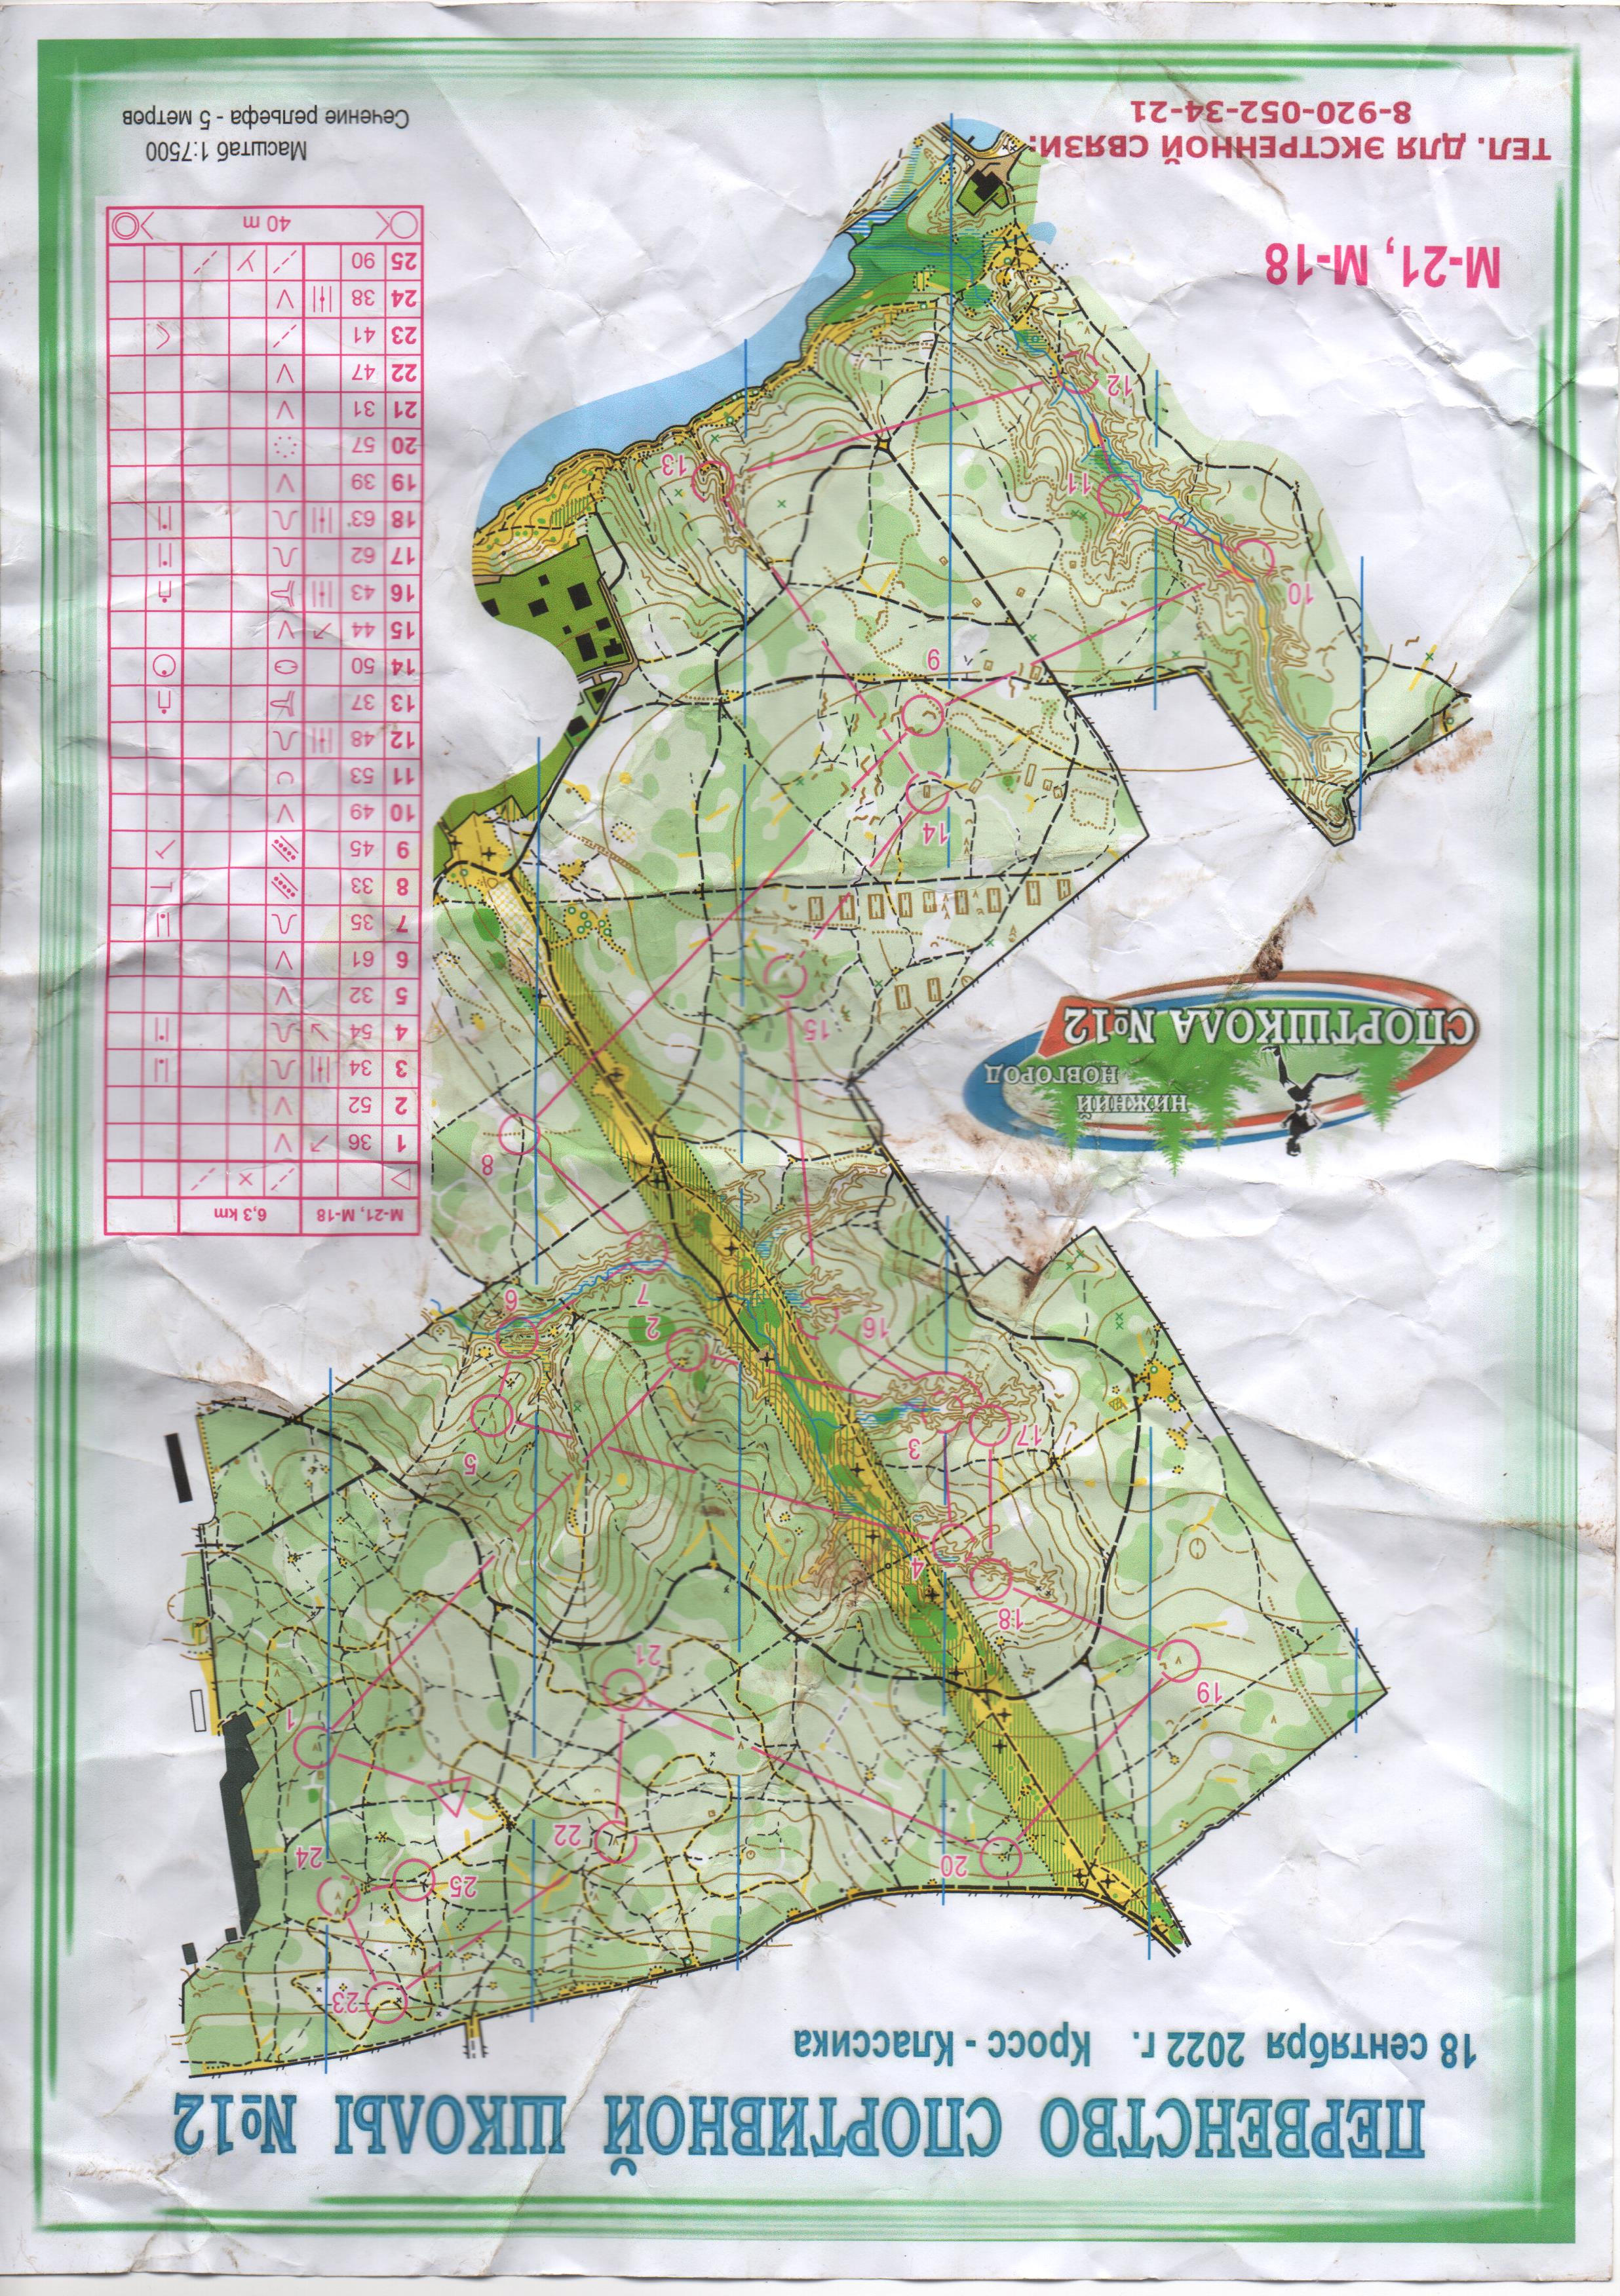 Карта без трэка - Сш12, район - , из архива карт спортивного ориентирования Олег Сибиряков